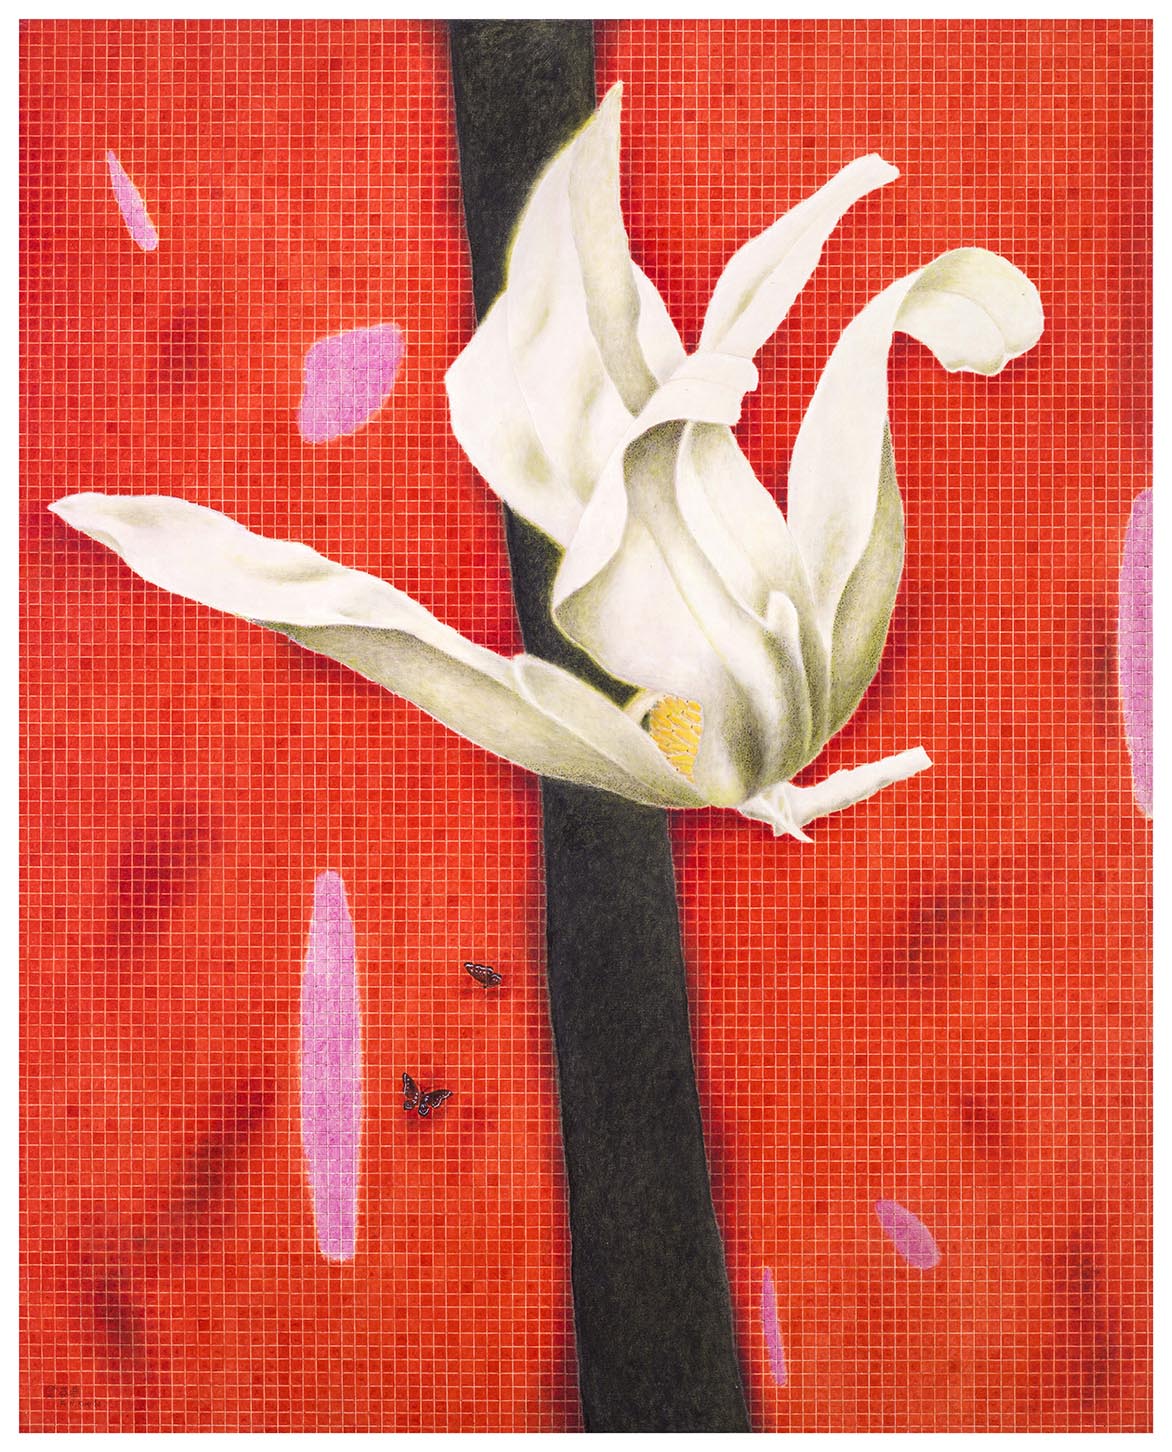 金芬華 木蘭花開-紅 油彩畫布 162x130cm